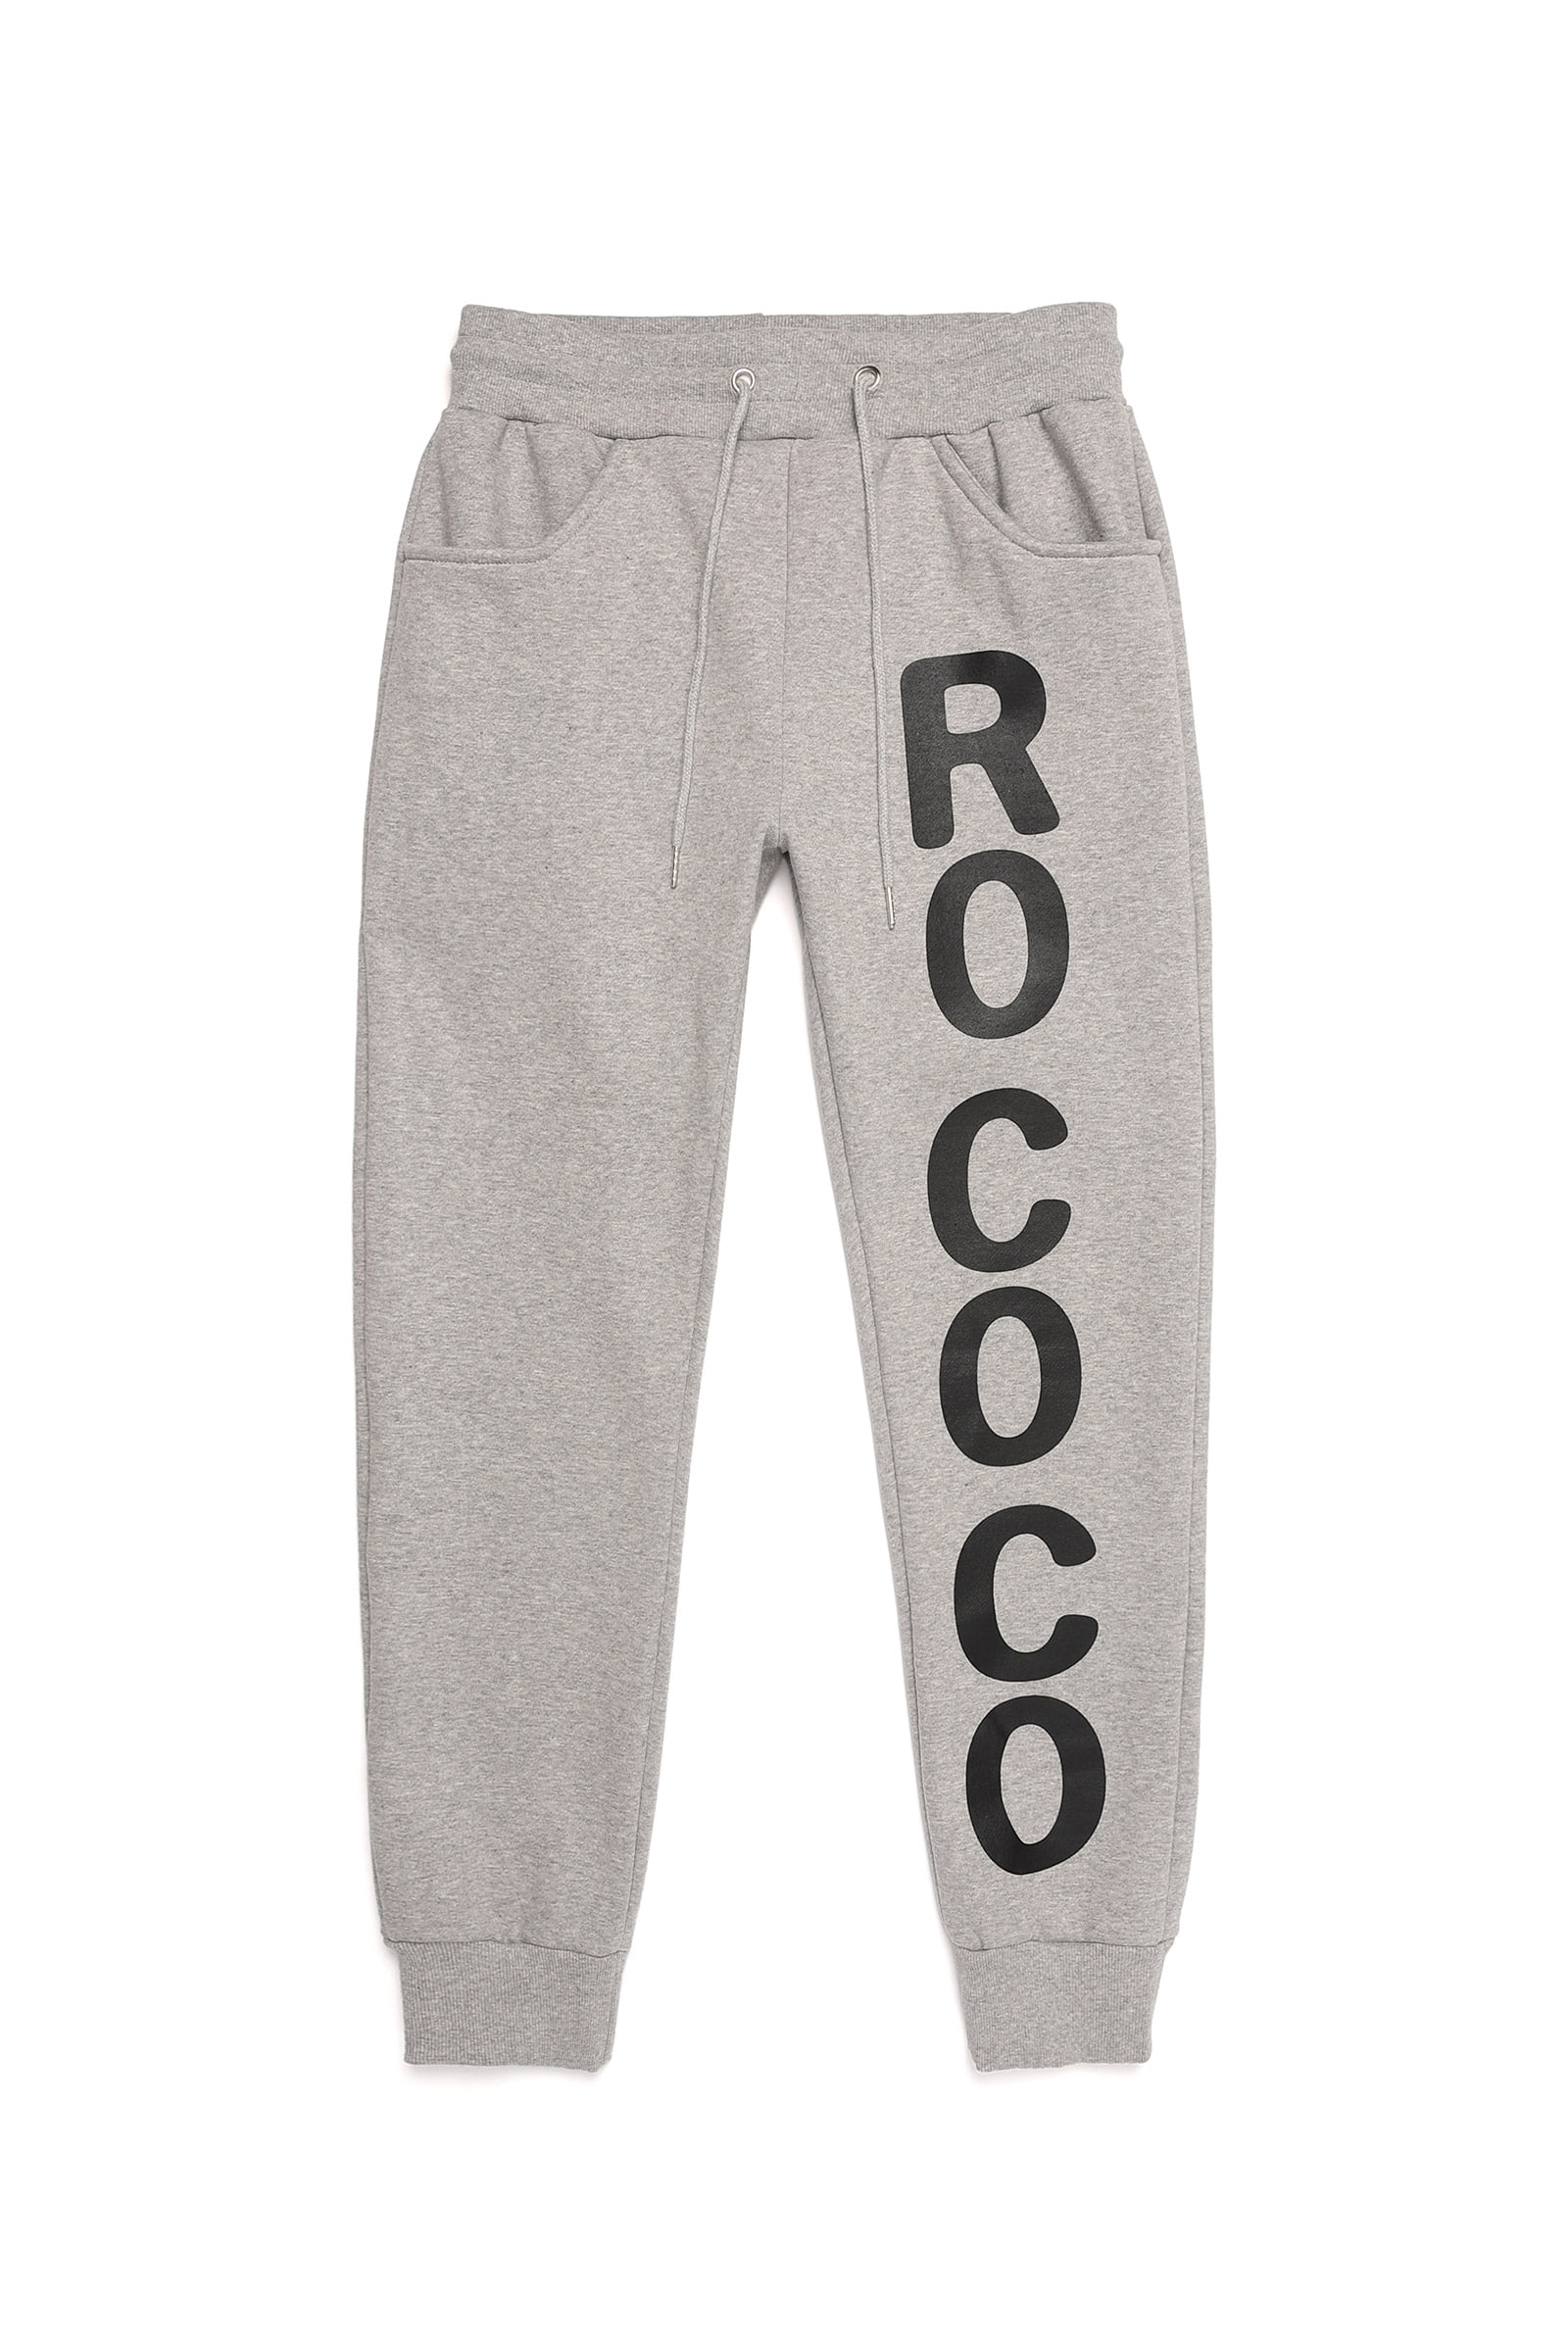 [무료배송] ROCOCO PANTS gray